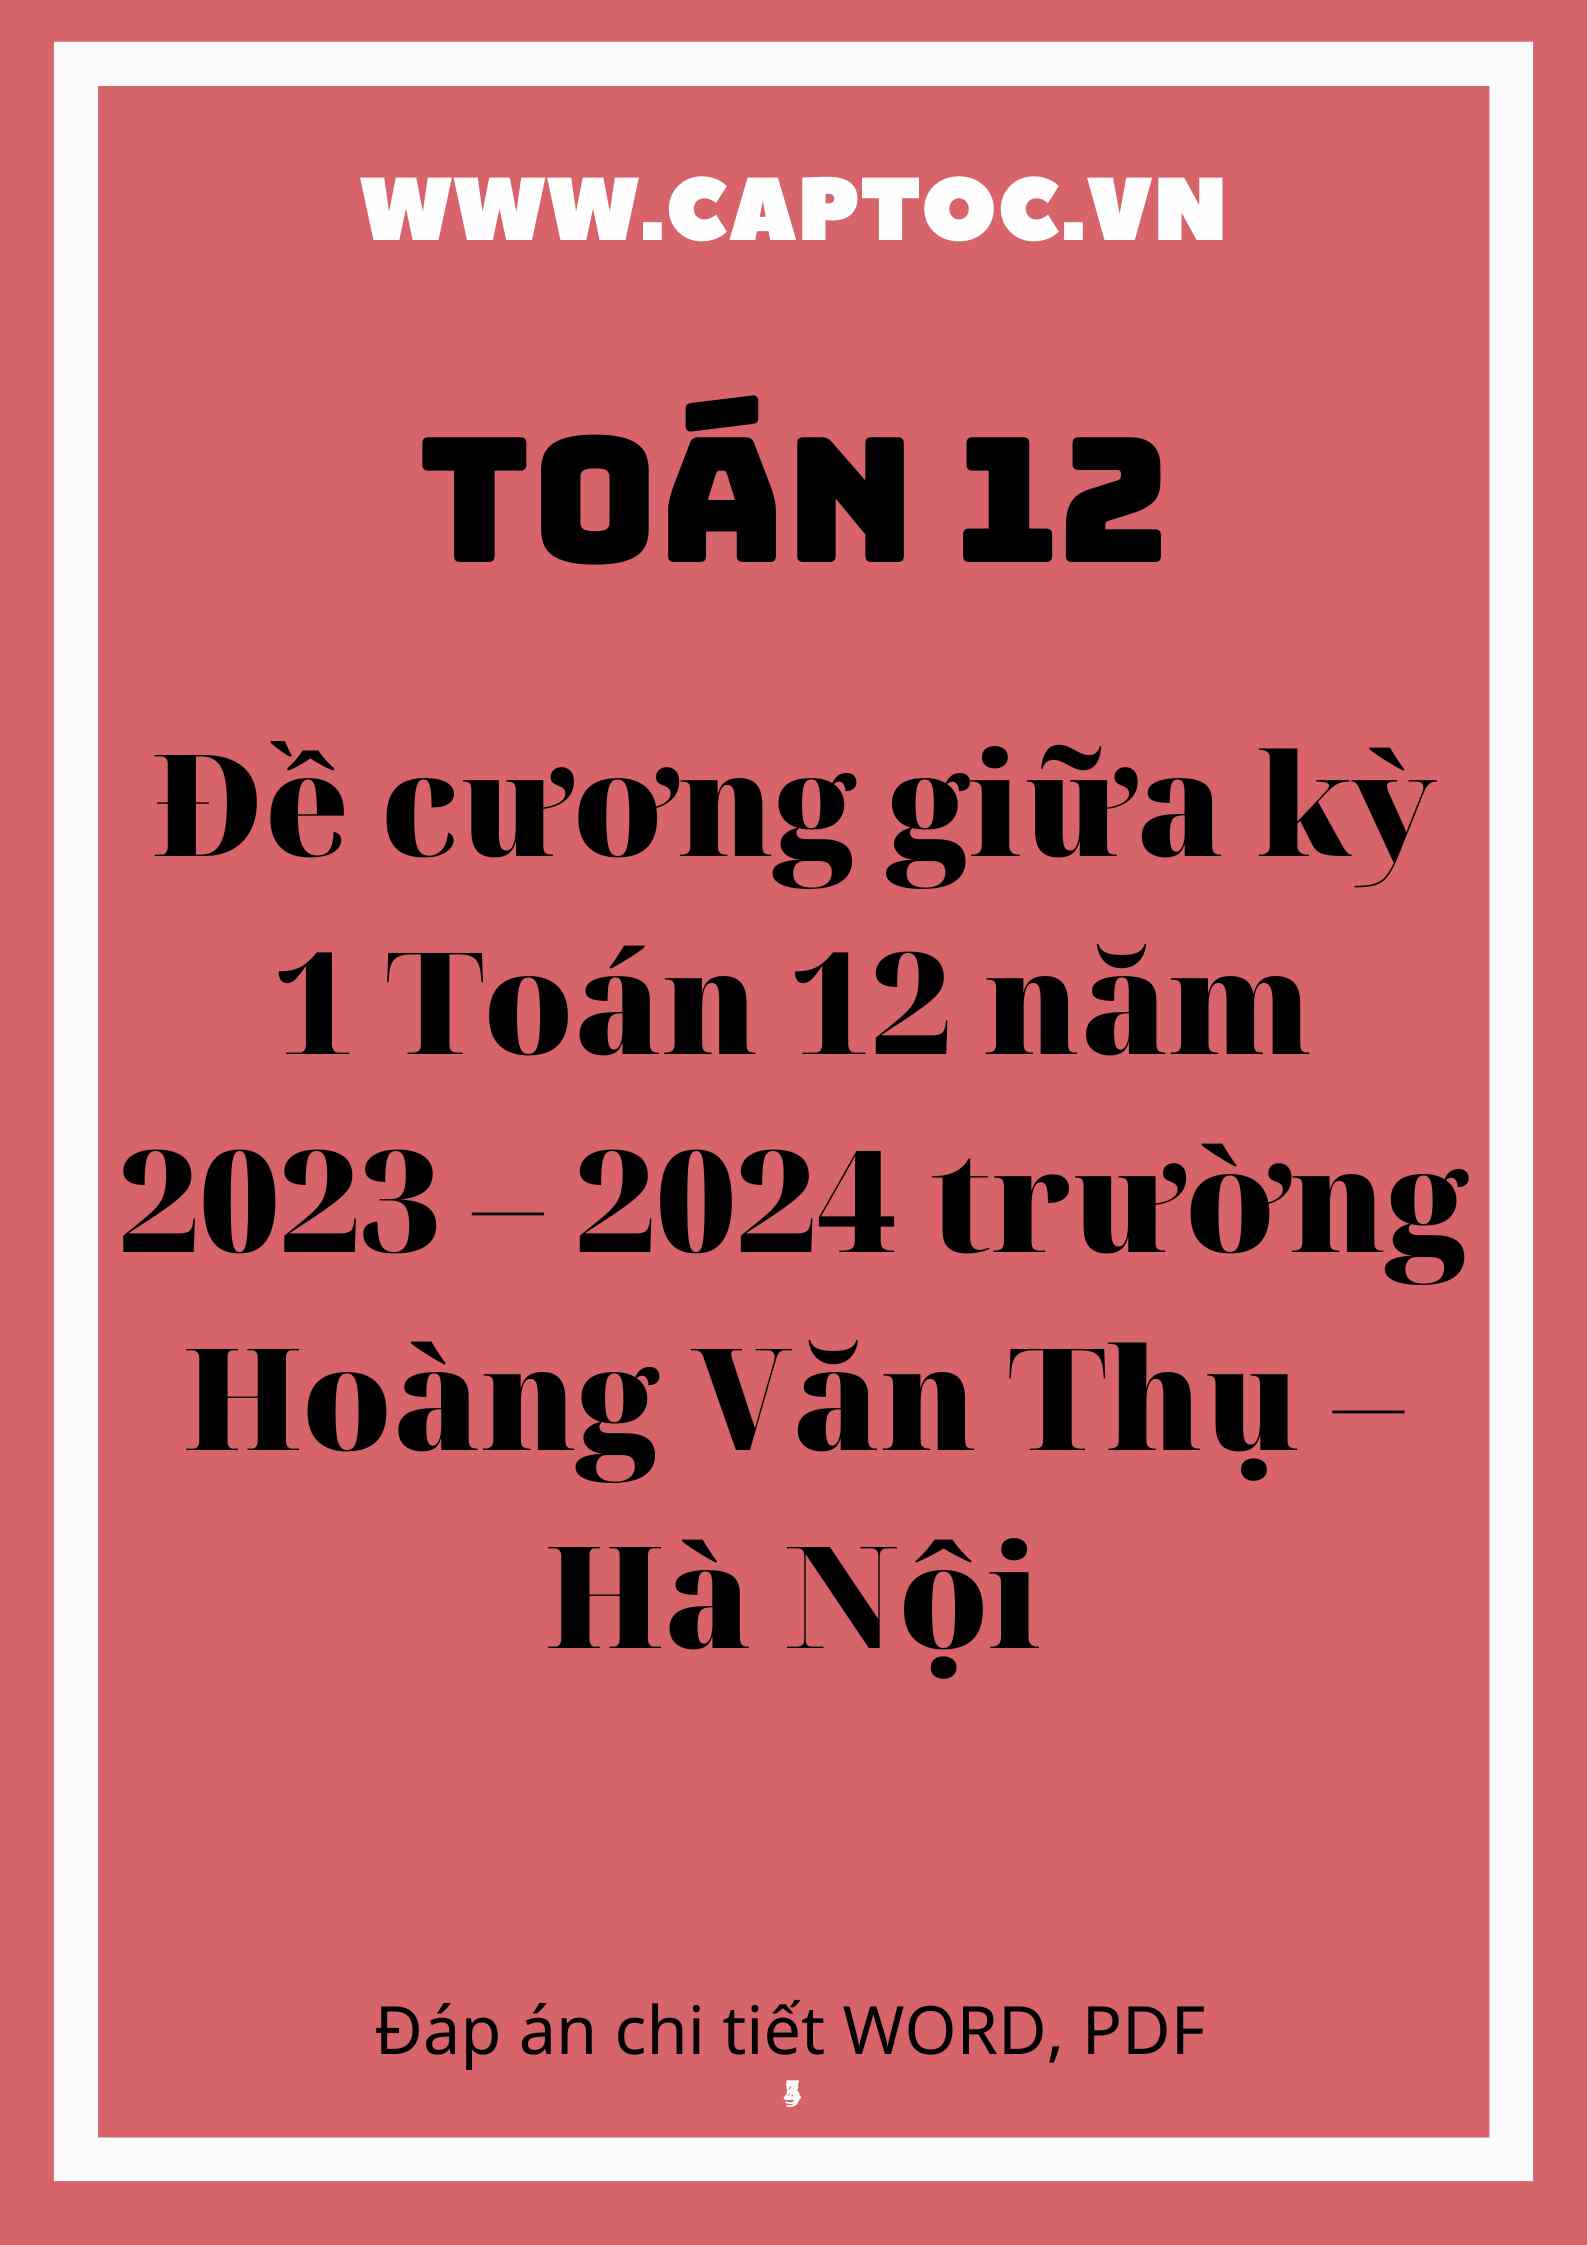 Đề cương giữa kỳ 1 Toán 12 năm 2023 – 2024 trường Hoàng Văn Thụ – Hà Nội